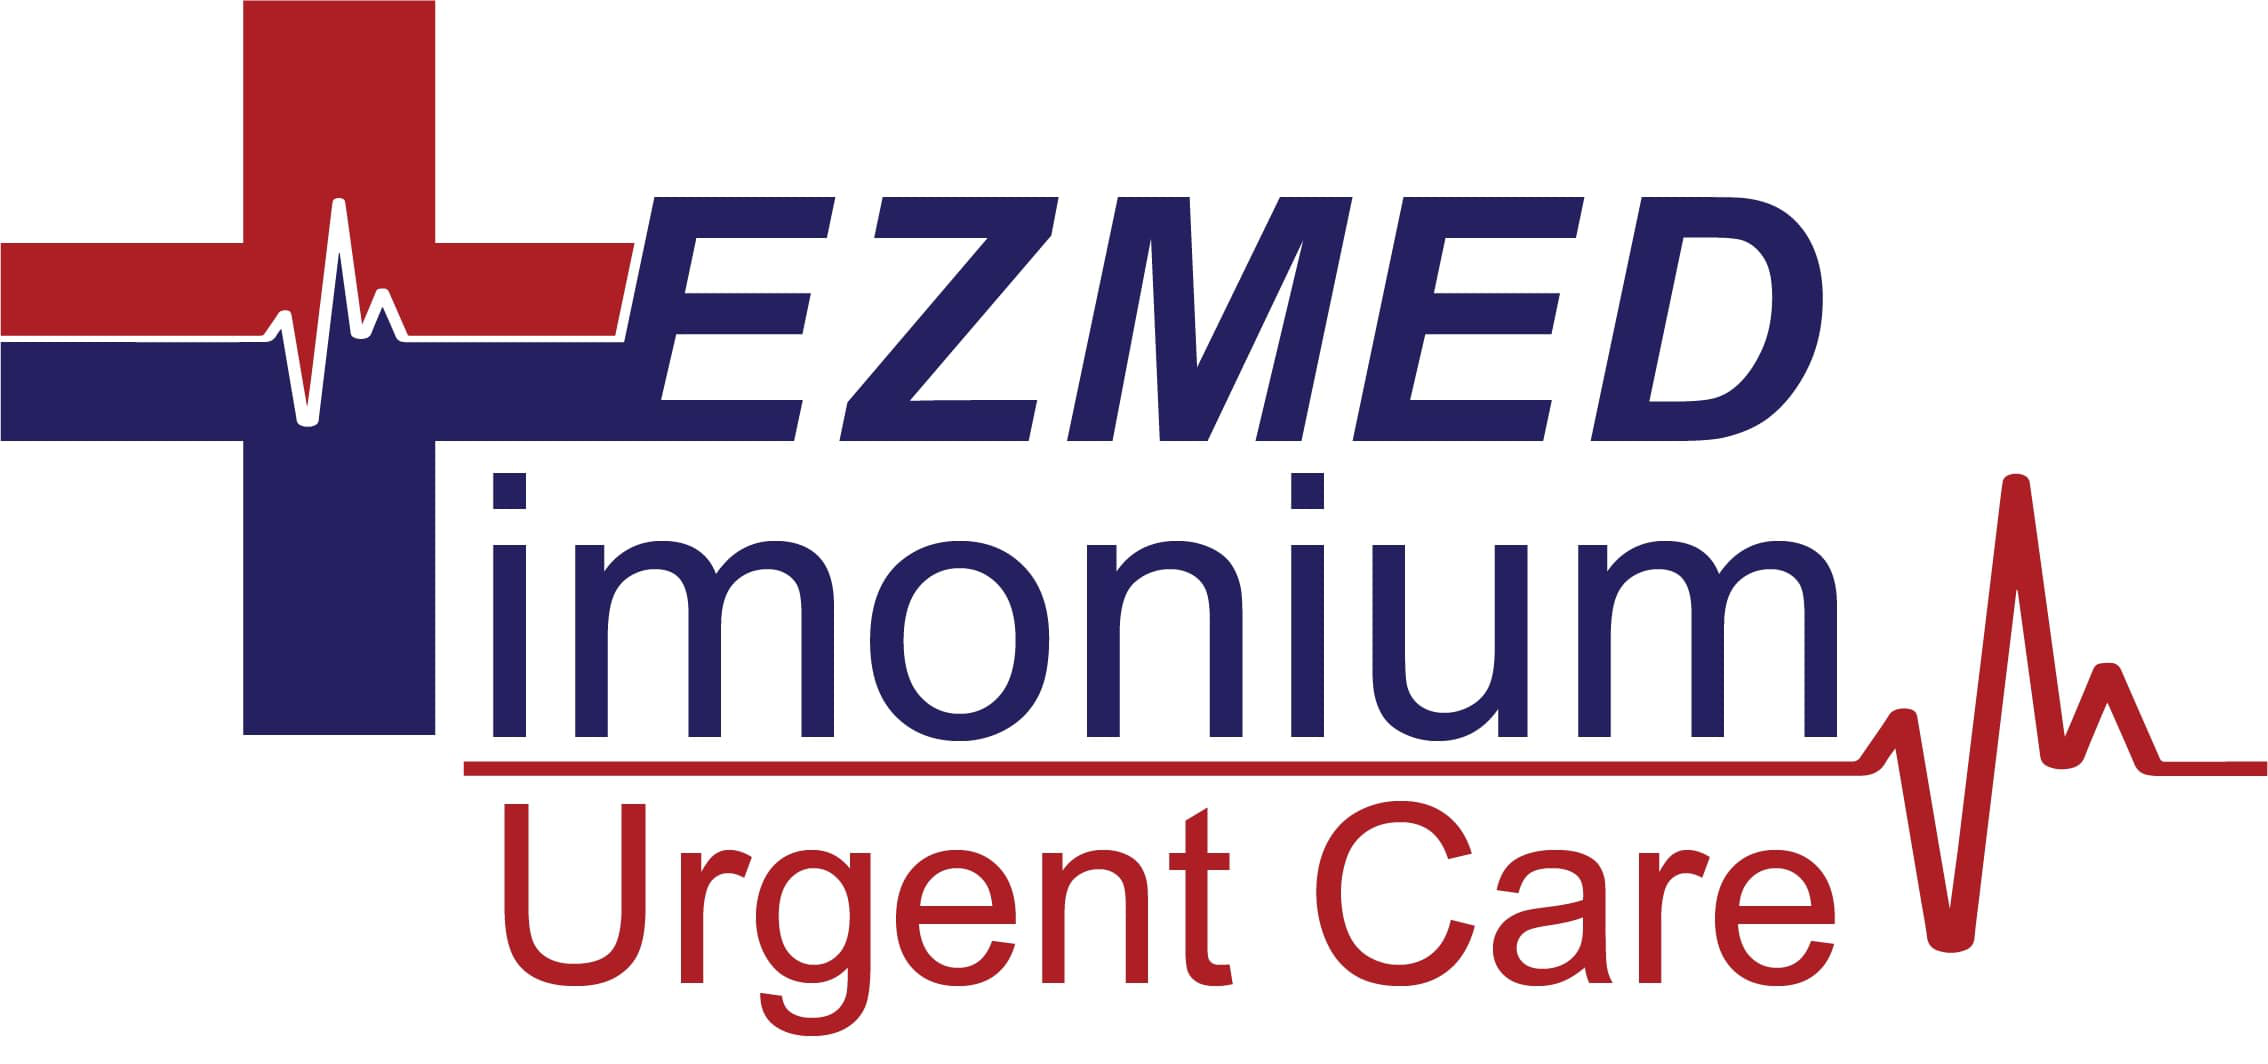 EZMED Urgent Care  - Timonium Logo